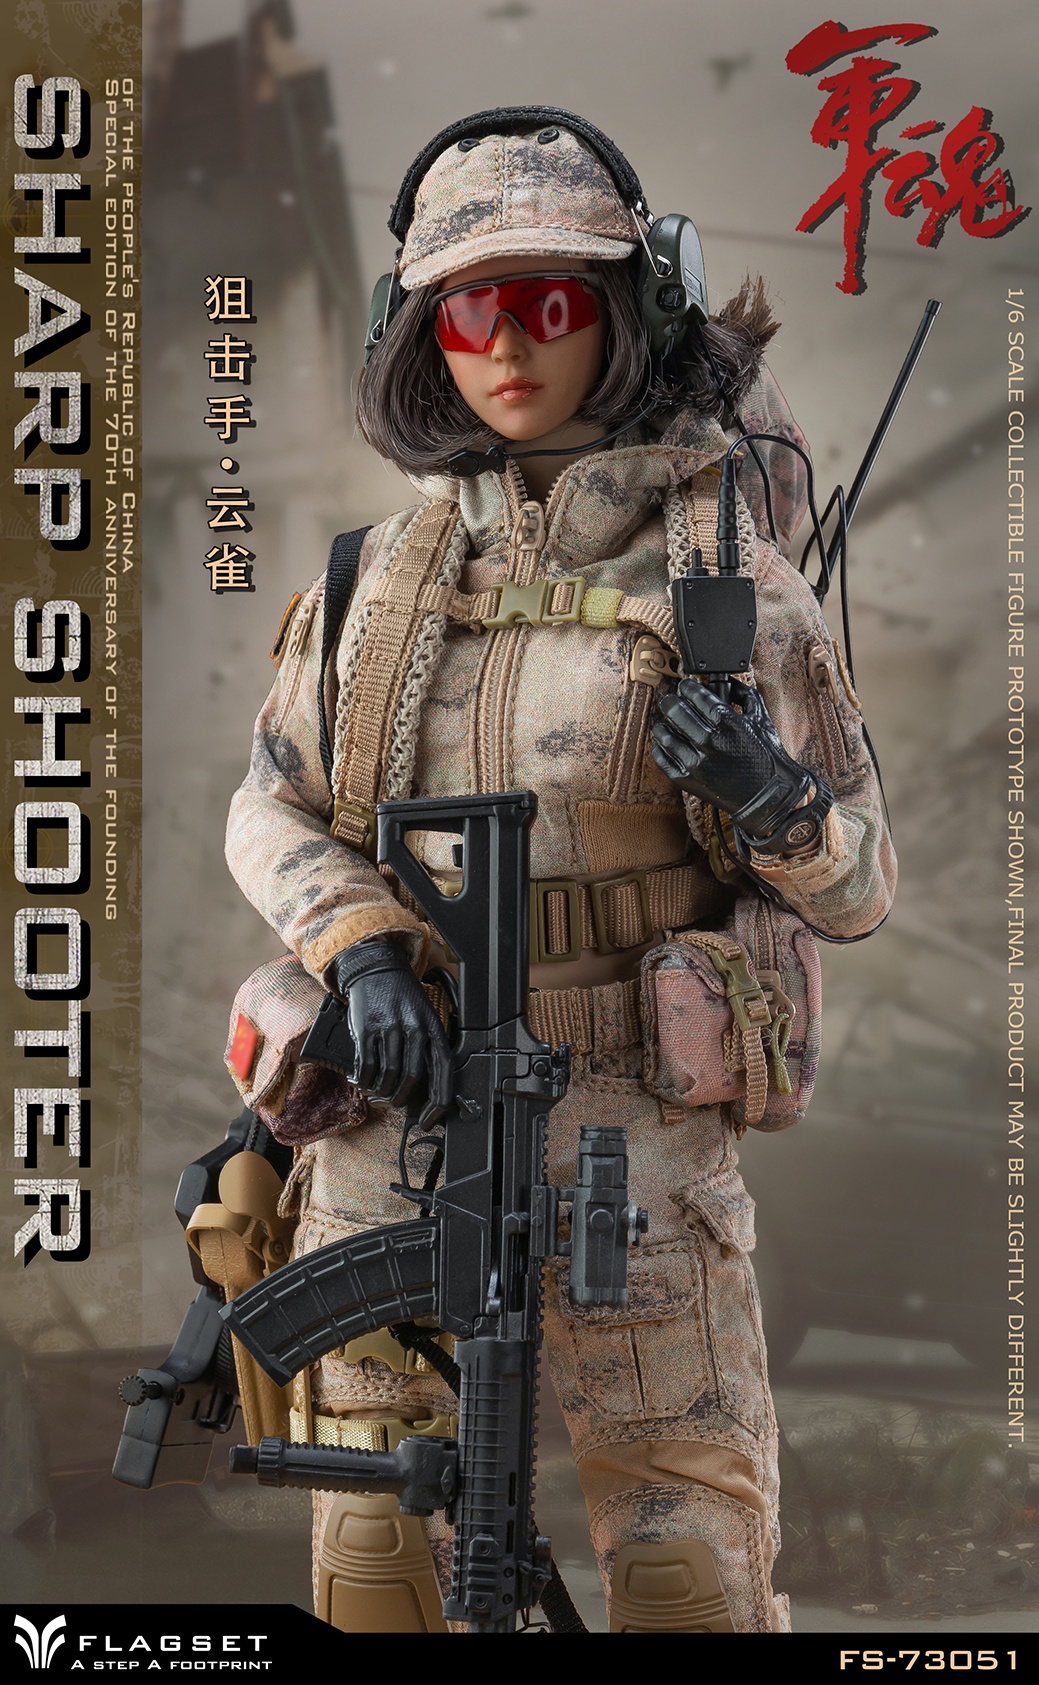 FS-73052 - NEW PRODUCT: FLAGSET - Military Soul Series - Assaulter Queyue/Sniper Skylark female team member, 2 models #FS-73051/73052 0247